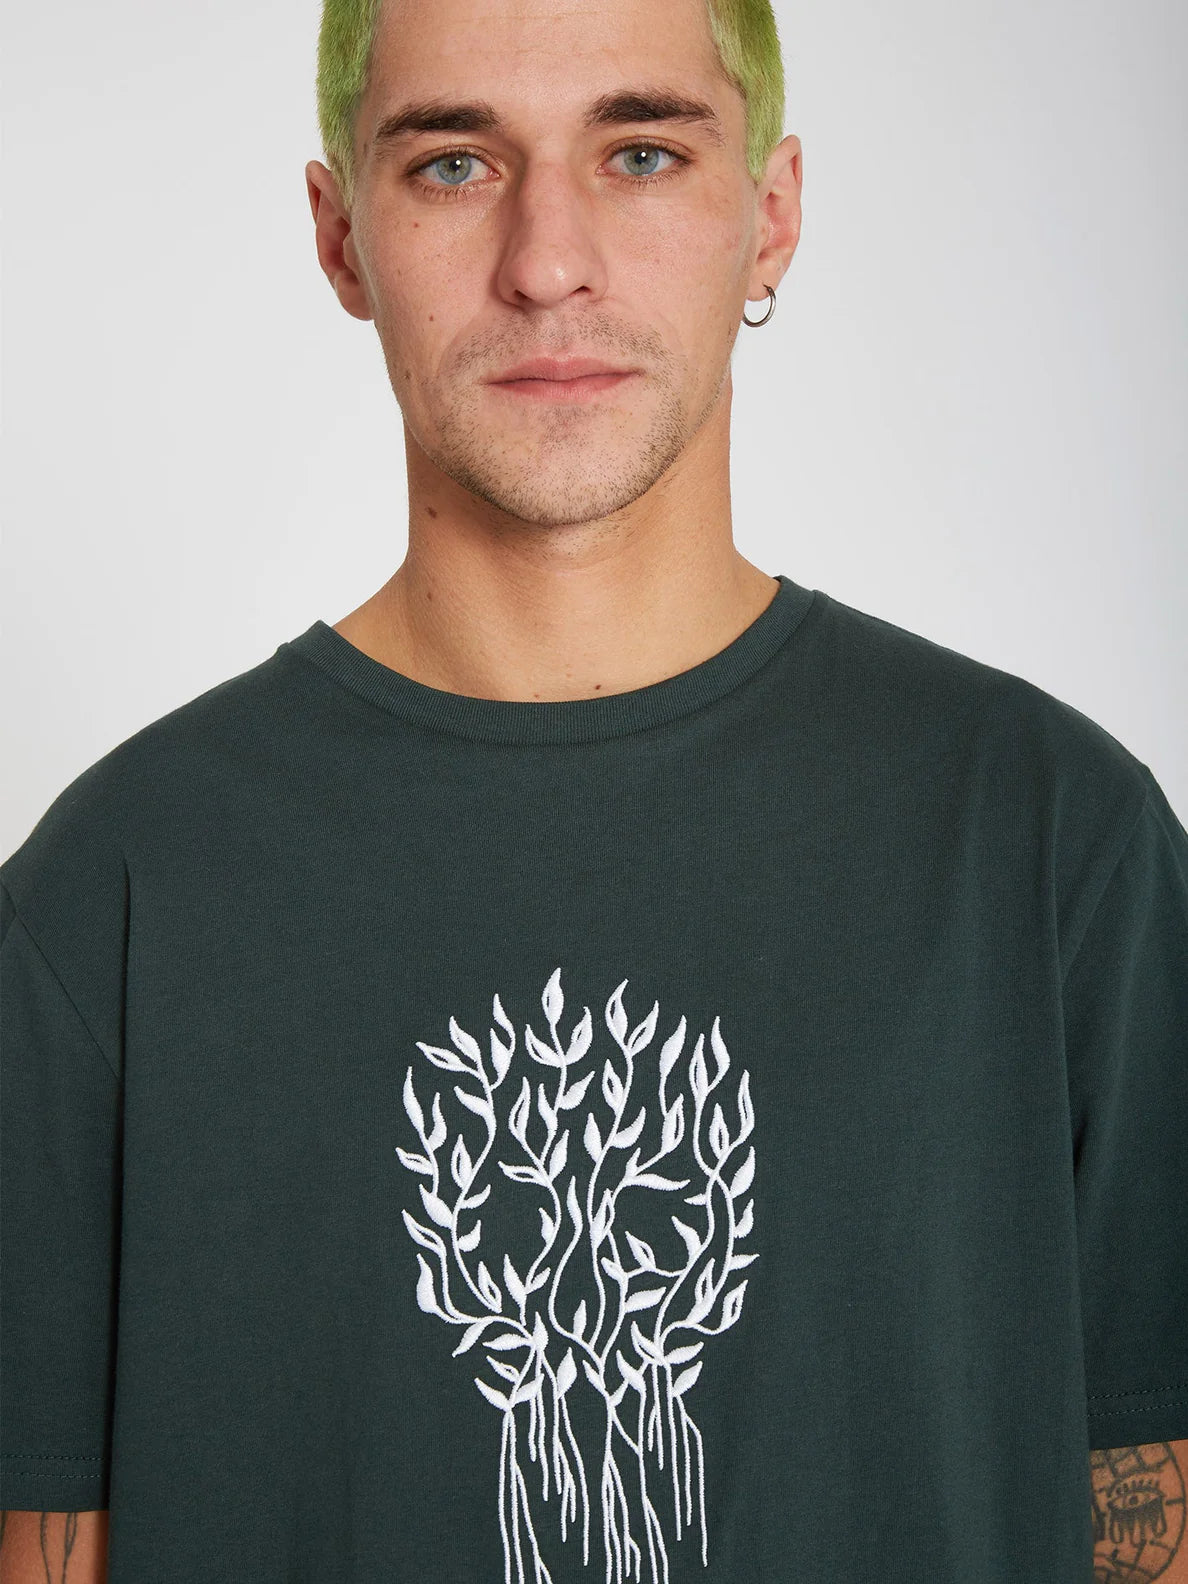 Camiseta Volcom Vaderetro 2 Cedar Green | surfdevils.com